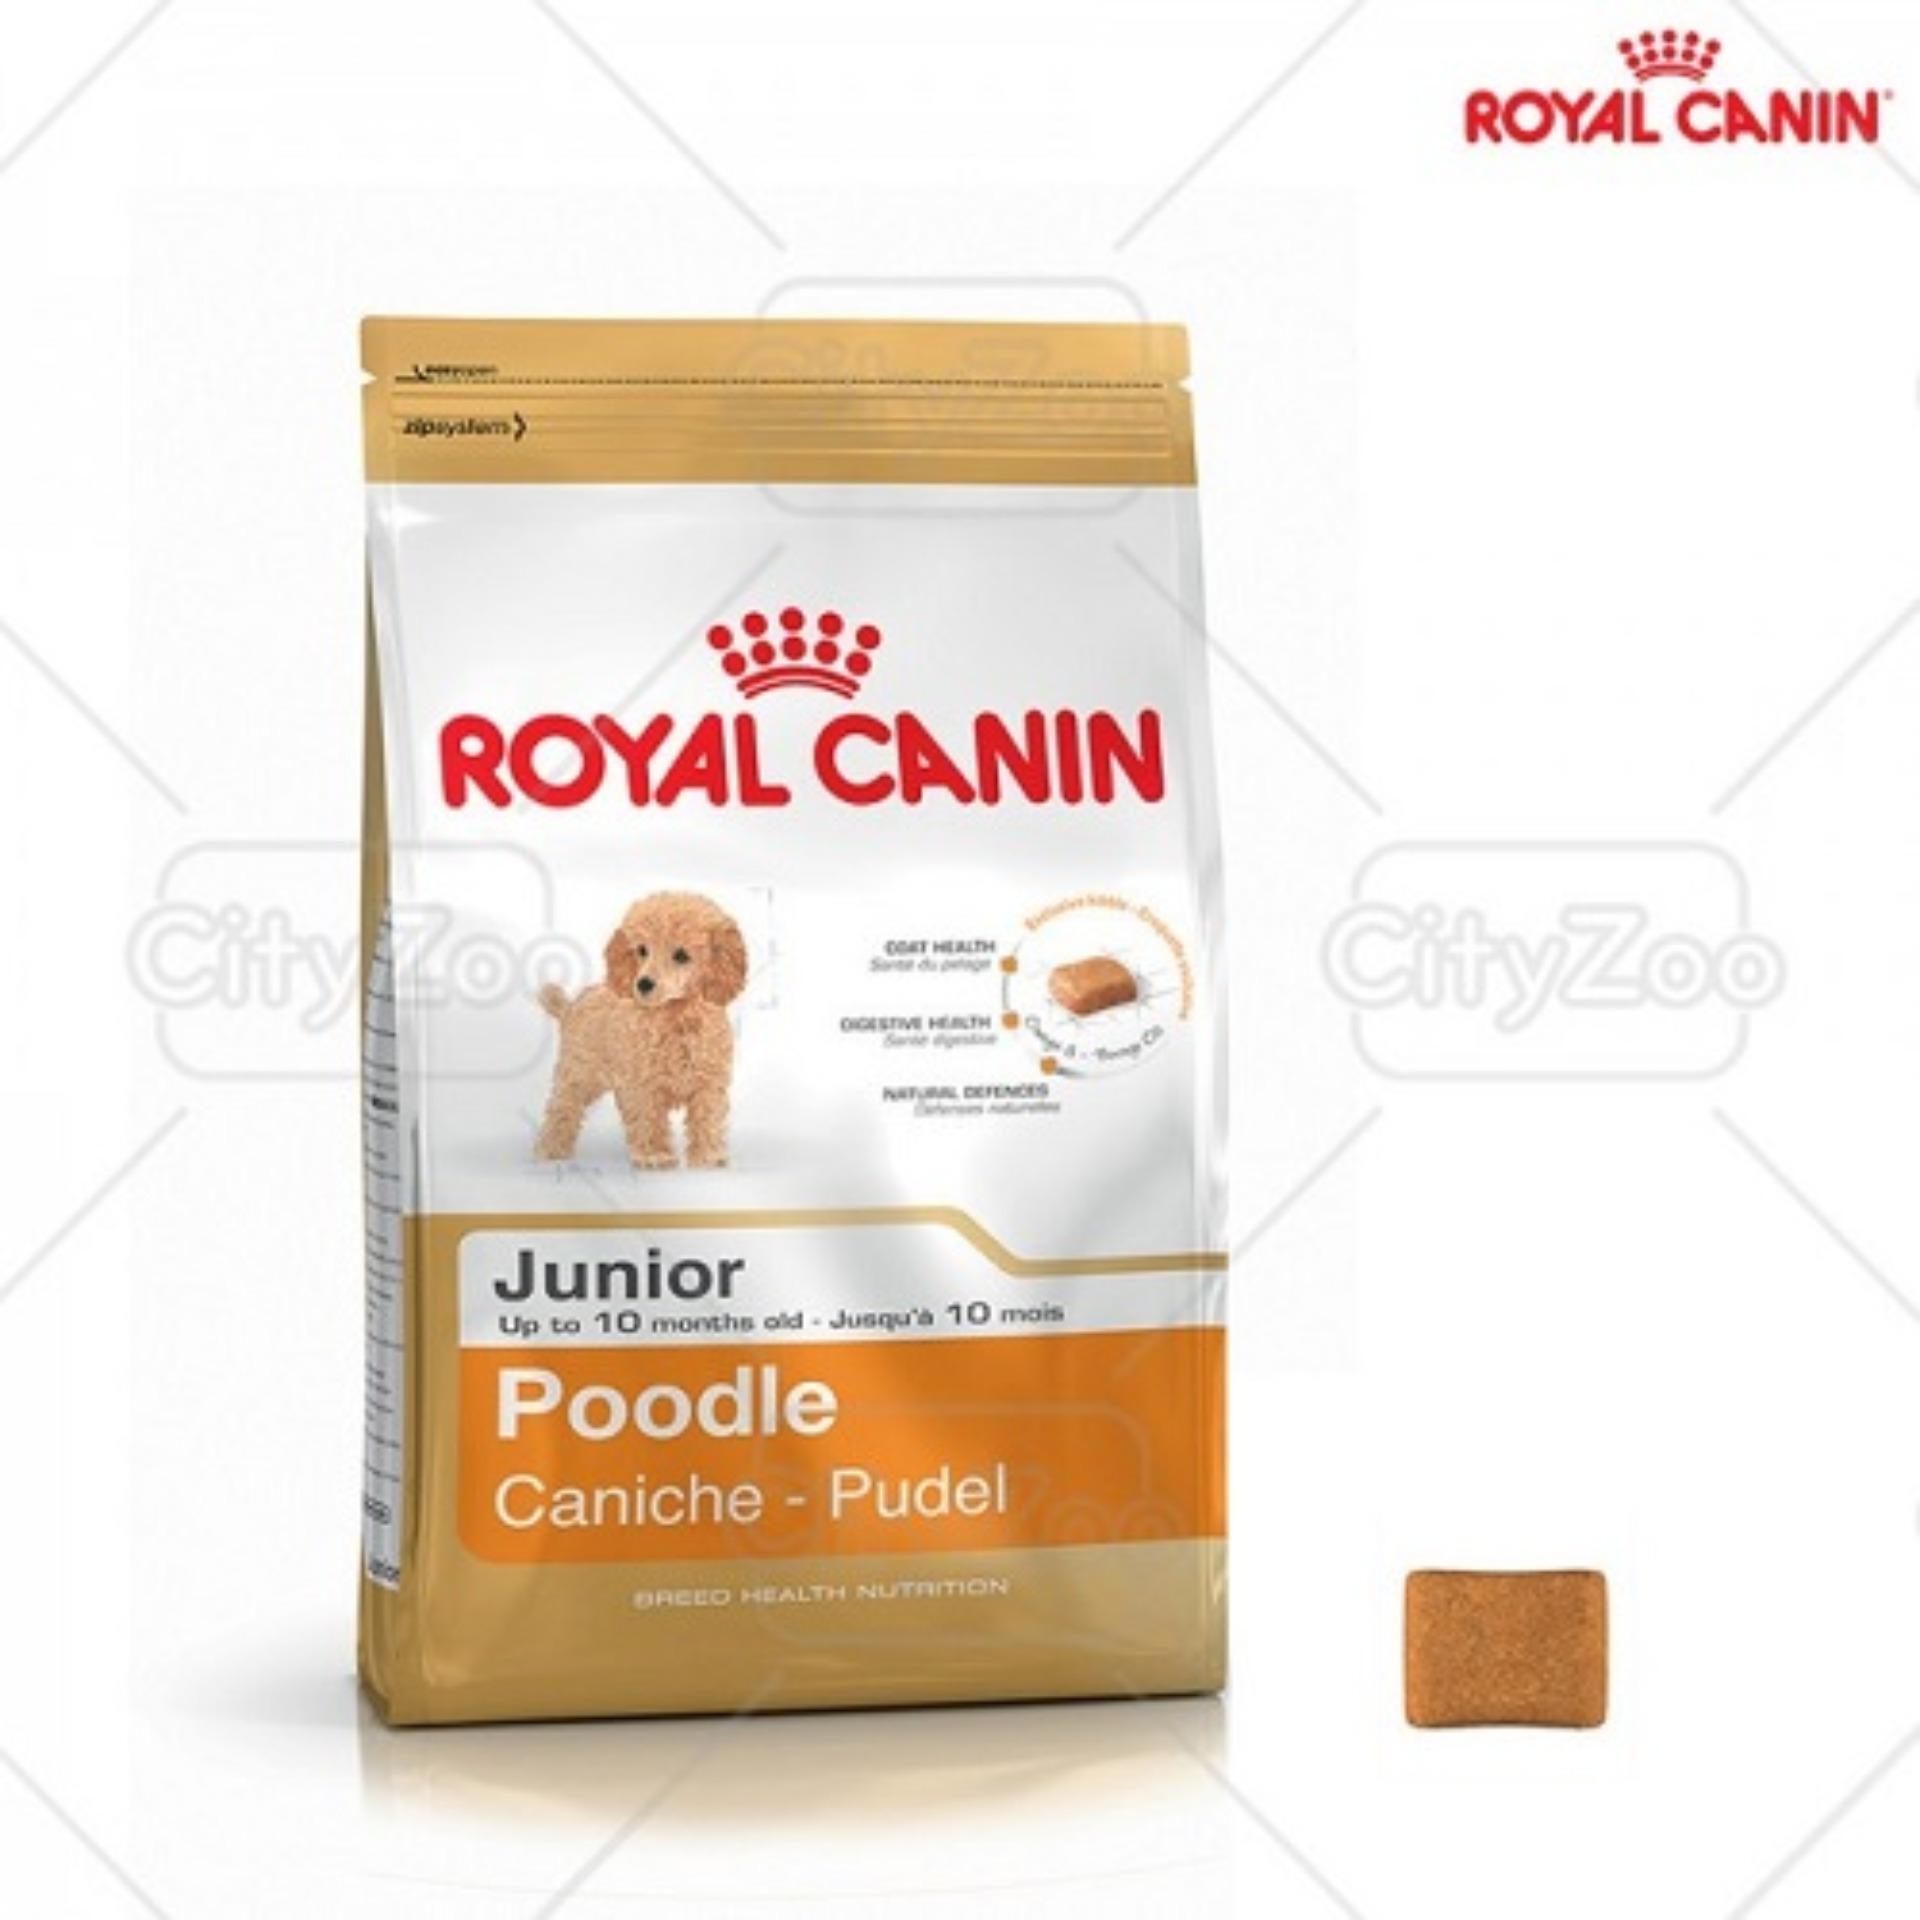 Thức ăn cho chó Royal Canin Poodle Junior - 1.5kg, dành riêng cho Poodle từ 2-10 tháng tuổi